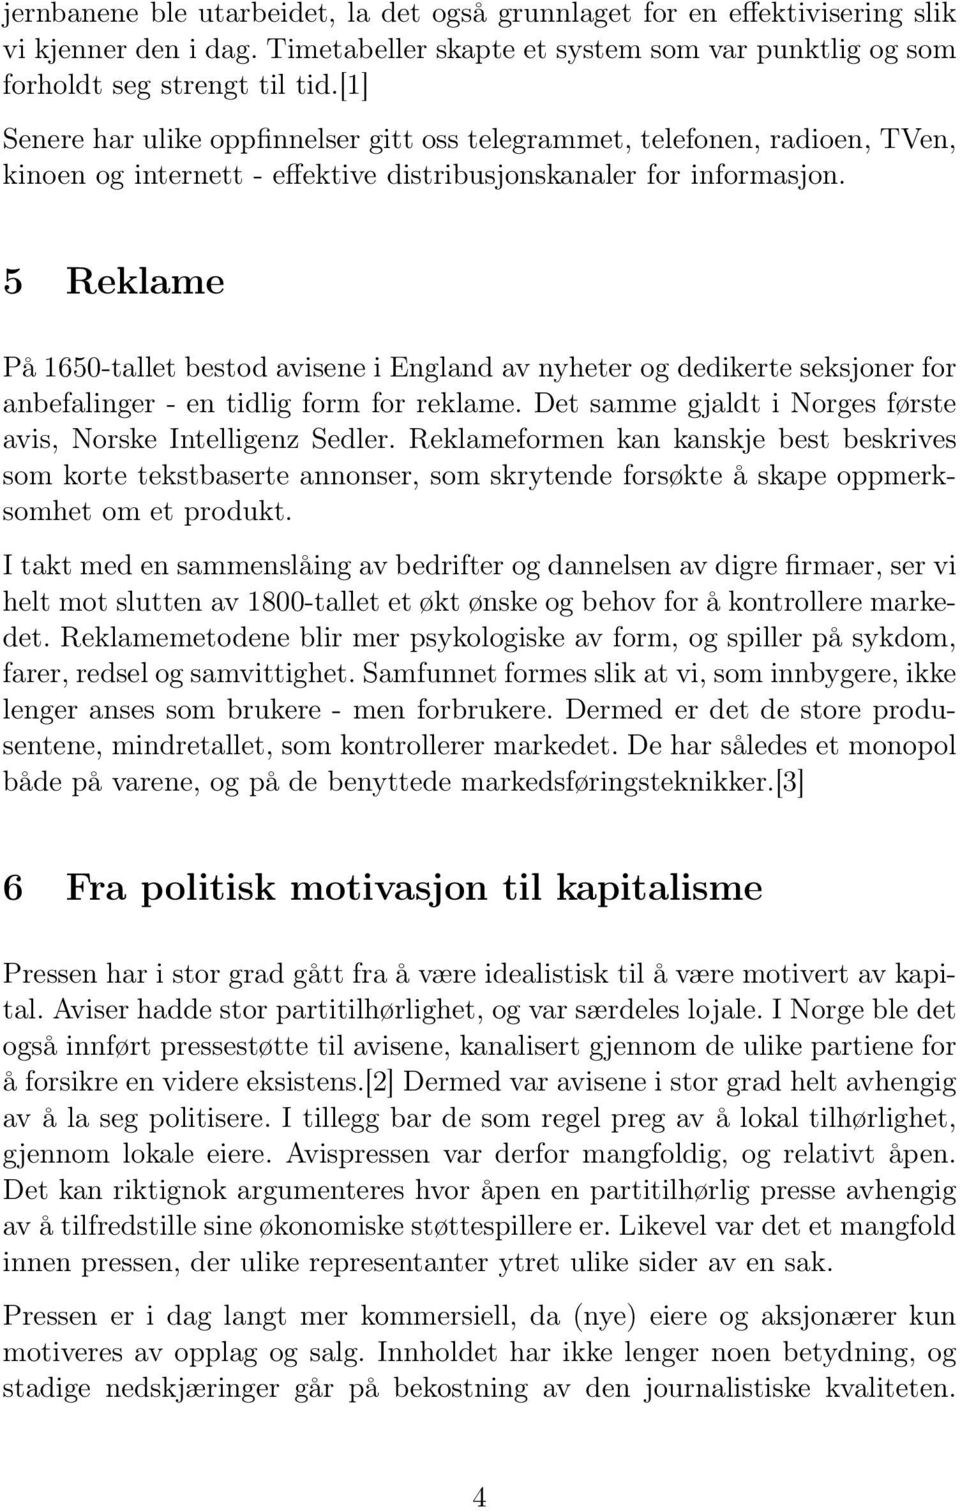 5 Reklame På 1650-tallet bestod avisene i England av nyheter og dedikerte seksjoner for anbefalinger - en tidlig form for reklame. Det samme gjaldt i Norges første avis, Norske Intelligenz Sedler.